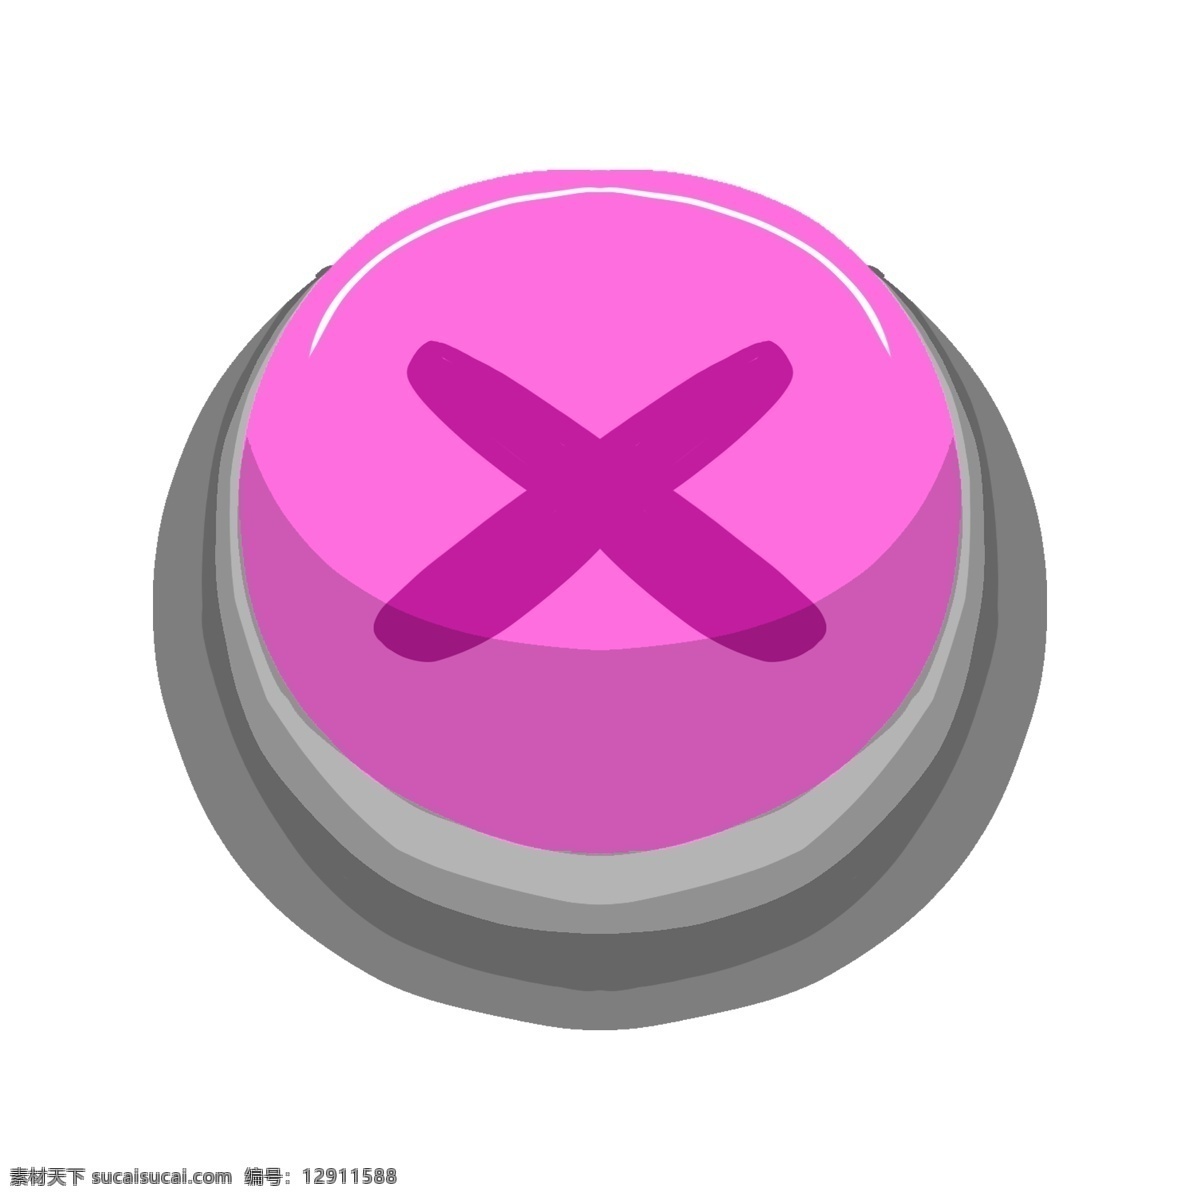 紫色 开始 按钮 插画 漂亮 圆形开始按钮 水晶开始按钮 手绘开始按钮 可爱